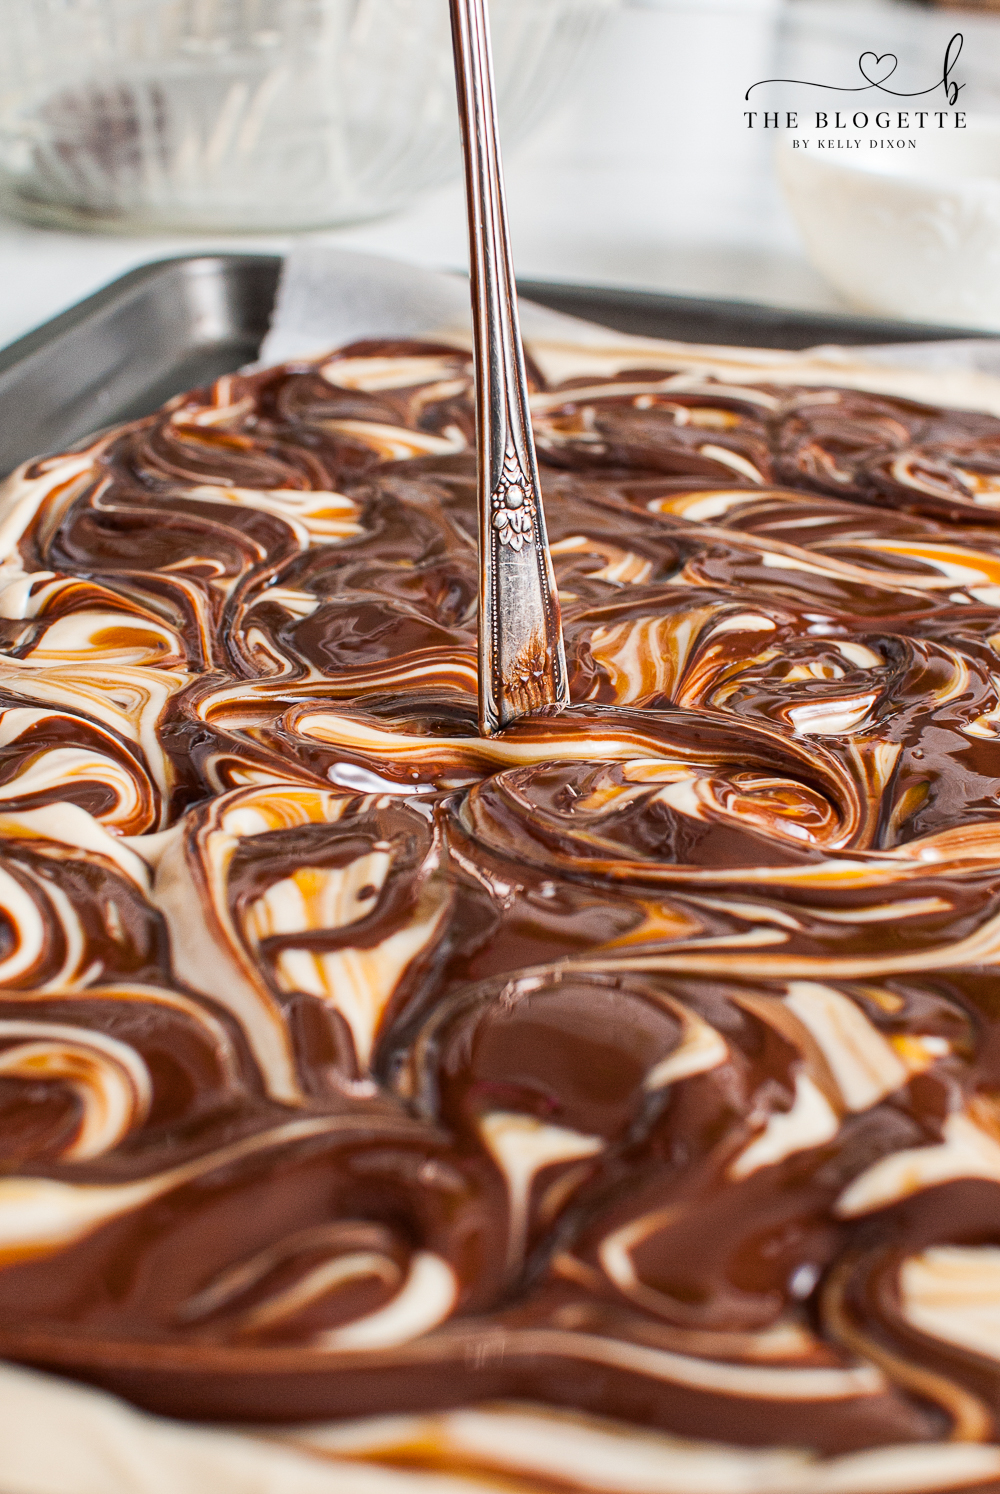 Swirled chocolate